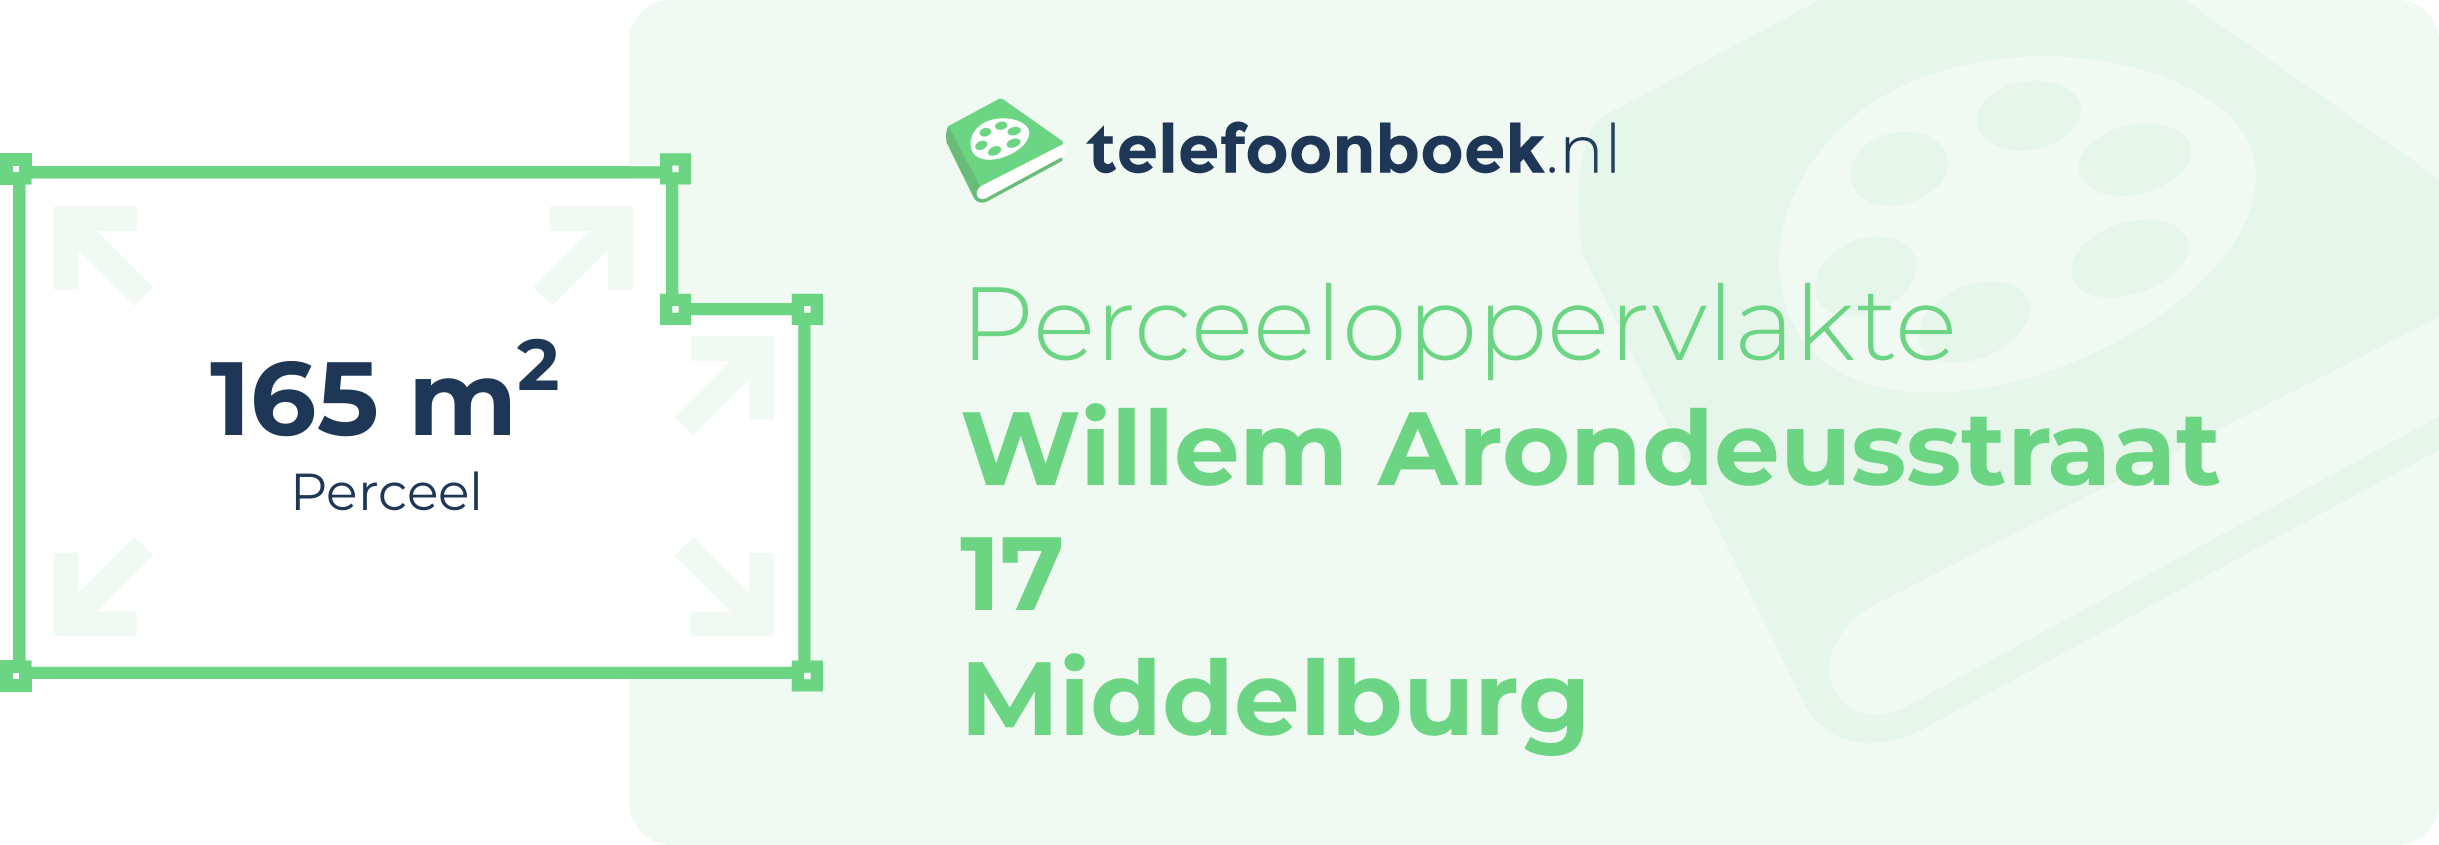 Perceeloppervlakte Willem Arondeusstraat 17 Middelburg